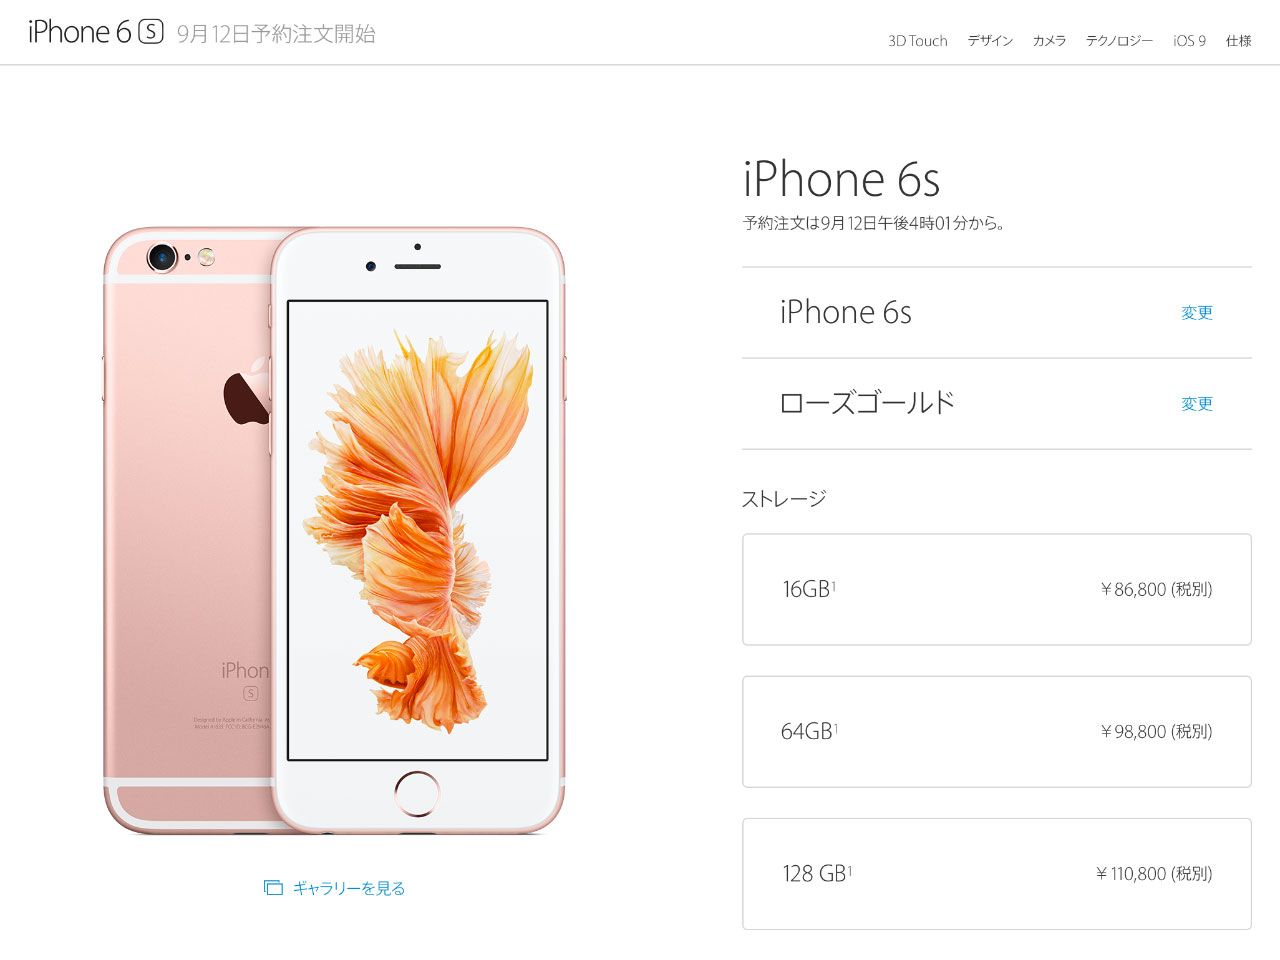 SIMフリー版「iPhone 6s／iPhone 6s Plus」は8万6800円から 従来